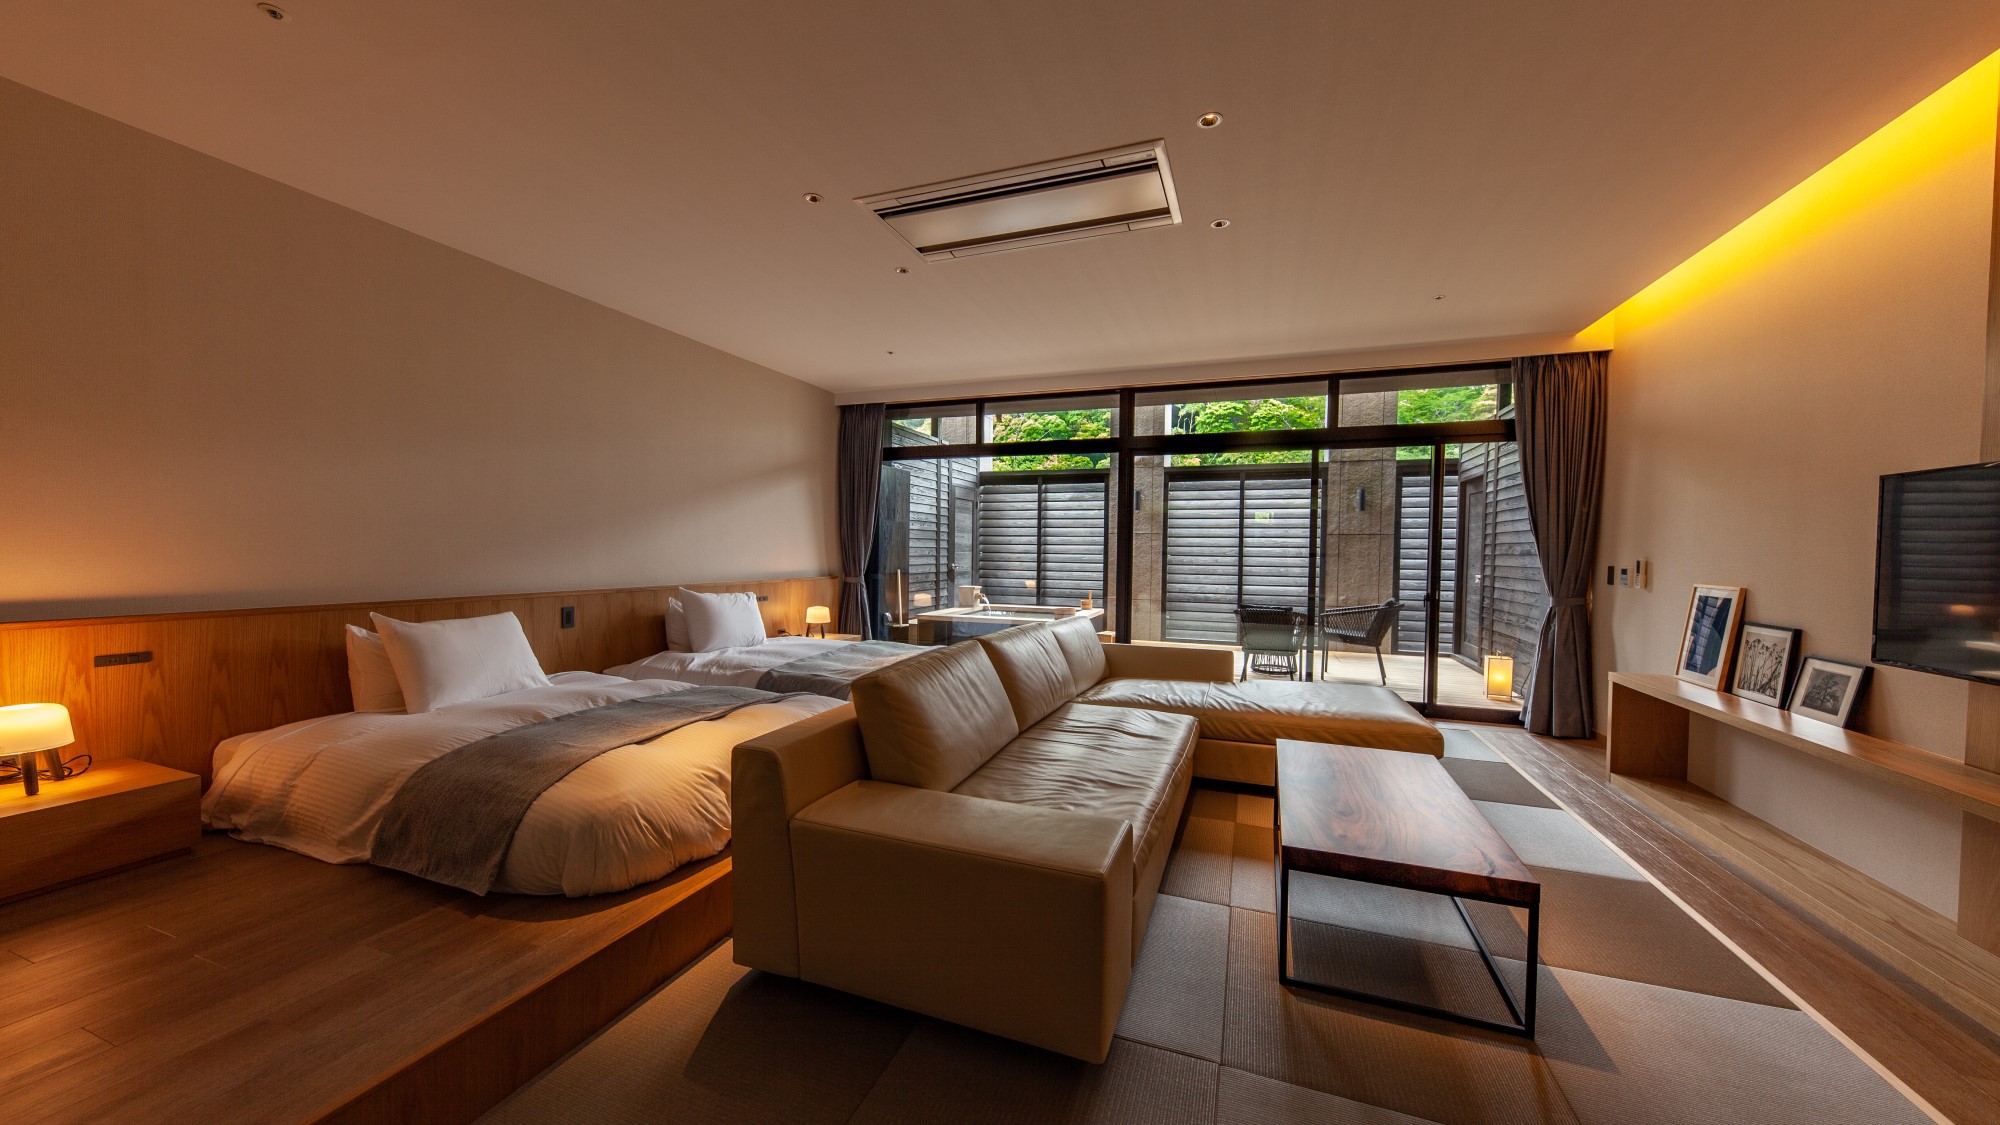 【露天風呂付スイート客室 -SANAワイドルーム-】2タイプの異なる客室は80平米の広々空間です。※